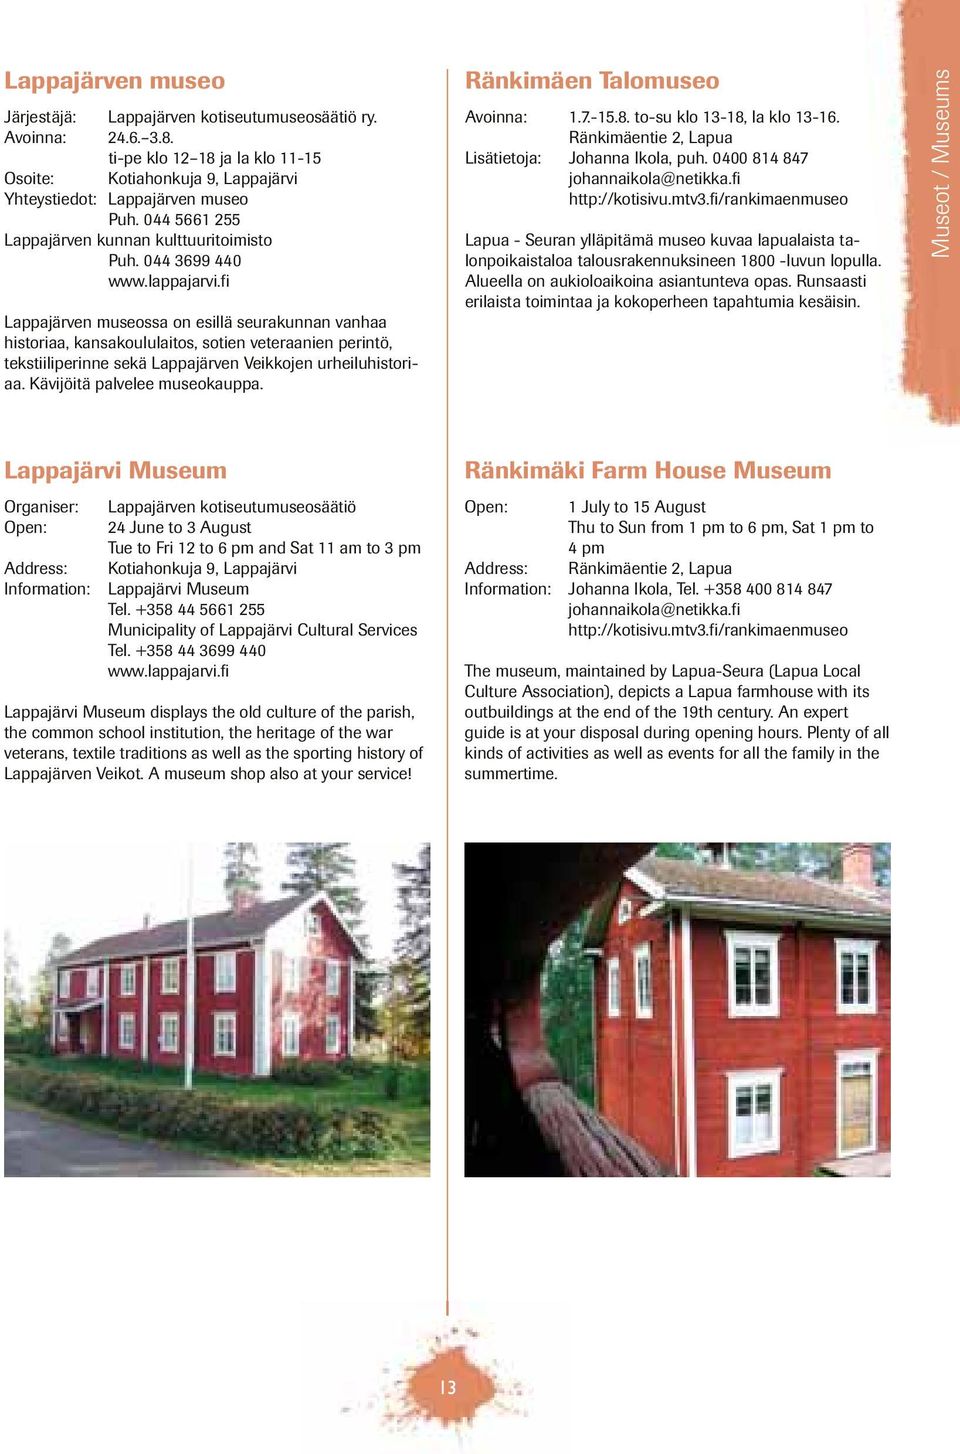 fi Lappajärven museossa on esillä seurakunnan vanhaa historiaa, kansakoululaitos, sotien veteraanien perintö, tekstiiliperinne sekä Lappajärven Veikkojen urheiluhistoriaa.